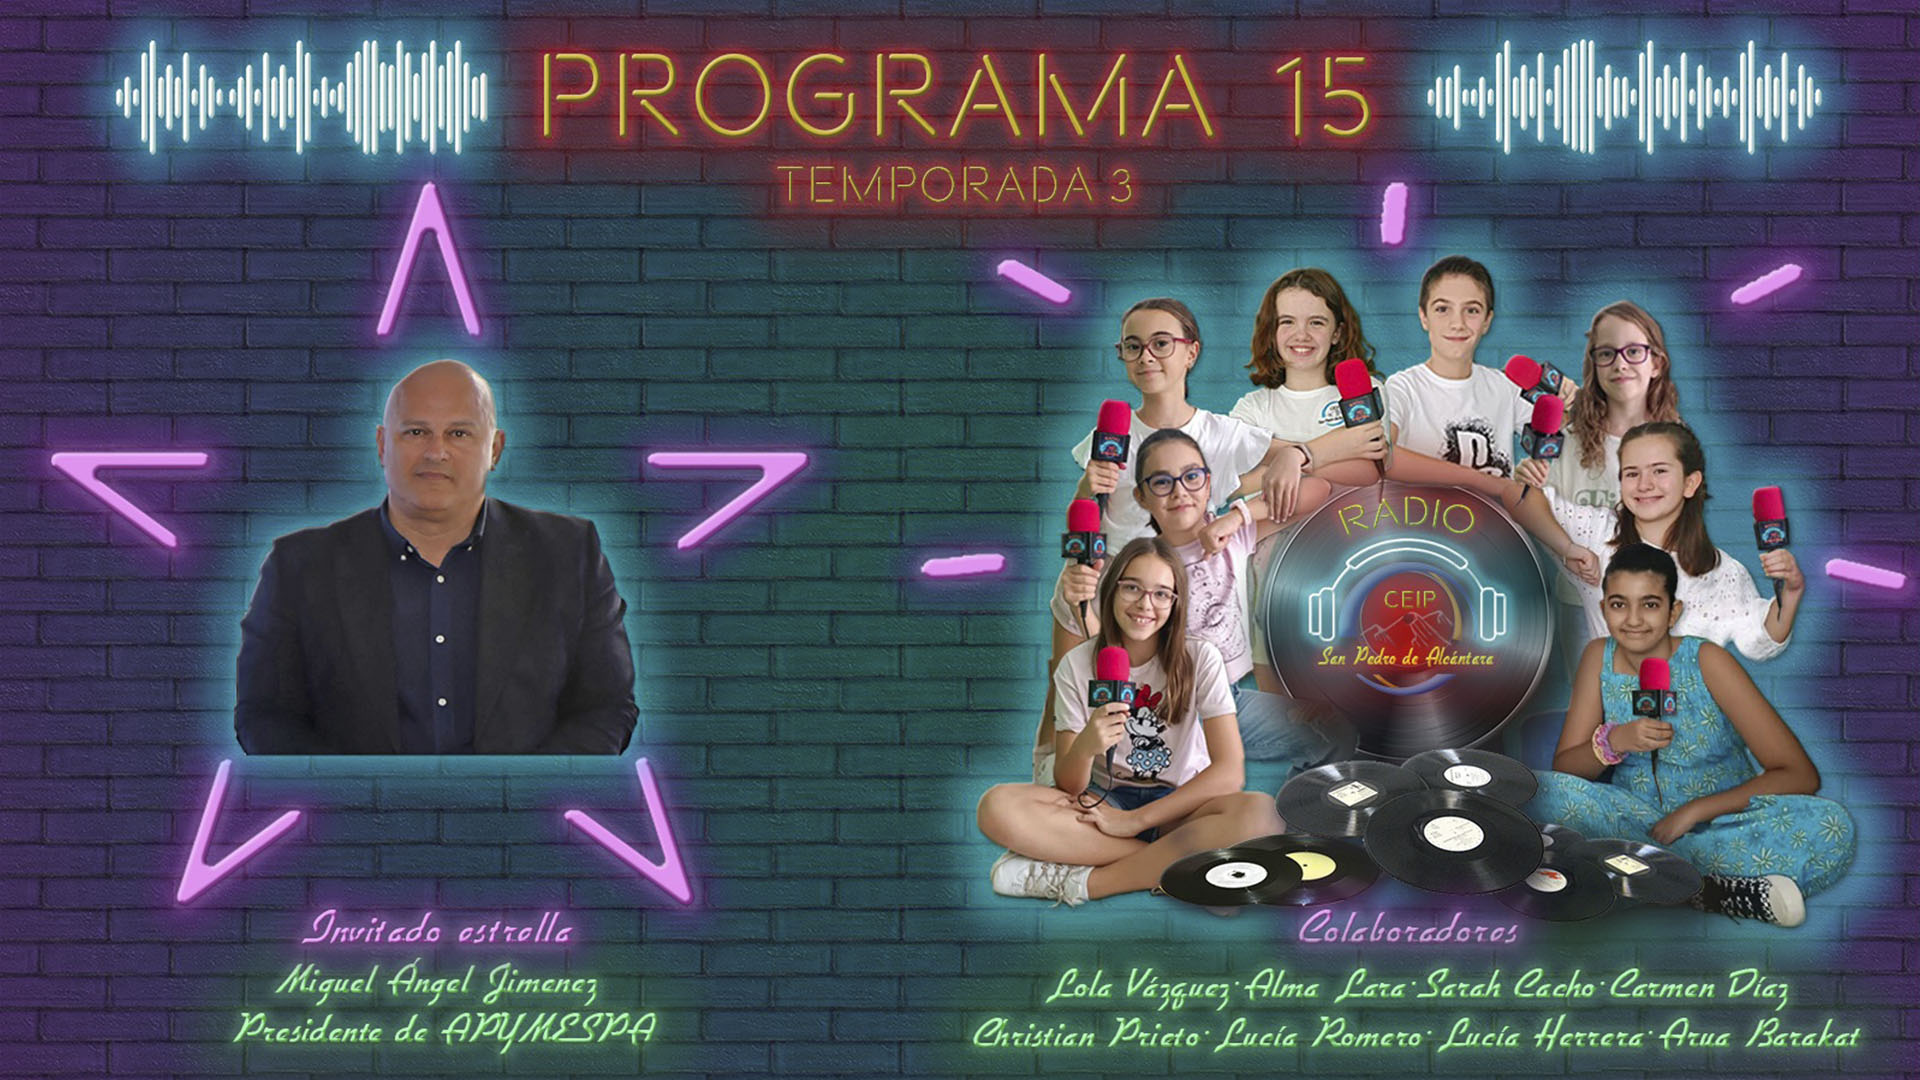 Radio CEIP San Pedro: Miguel Ángel Jiménez - T03-P15